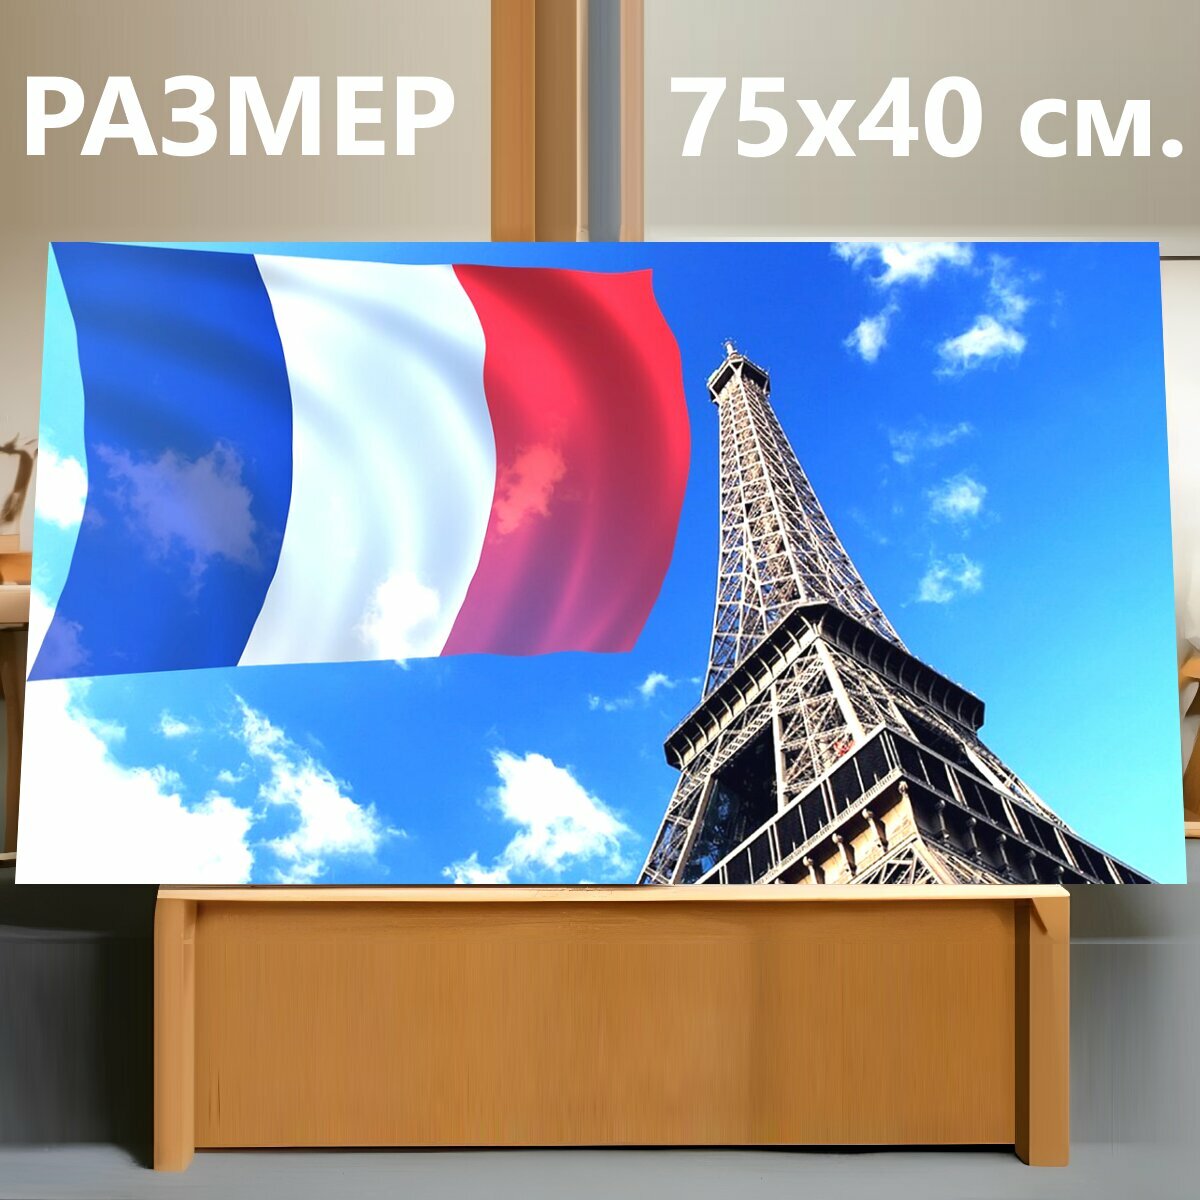 Картина на холсте "Париж, франция, эйфелева башня" на подрамнике 75х40 см. для интерьера